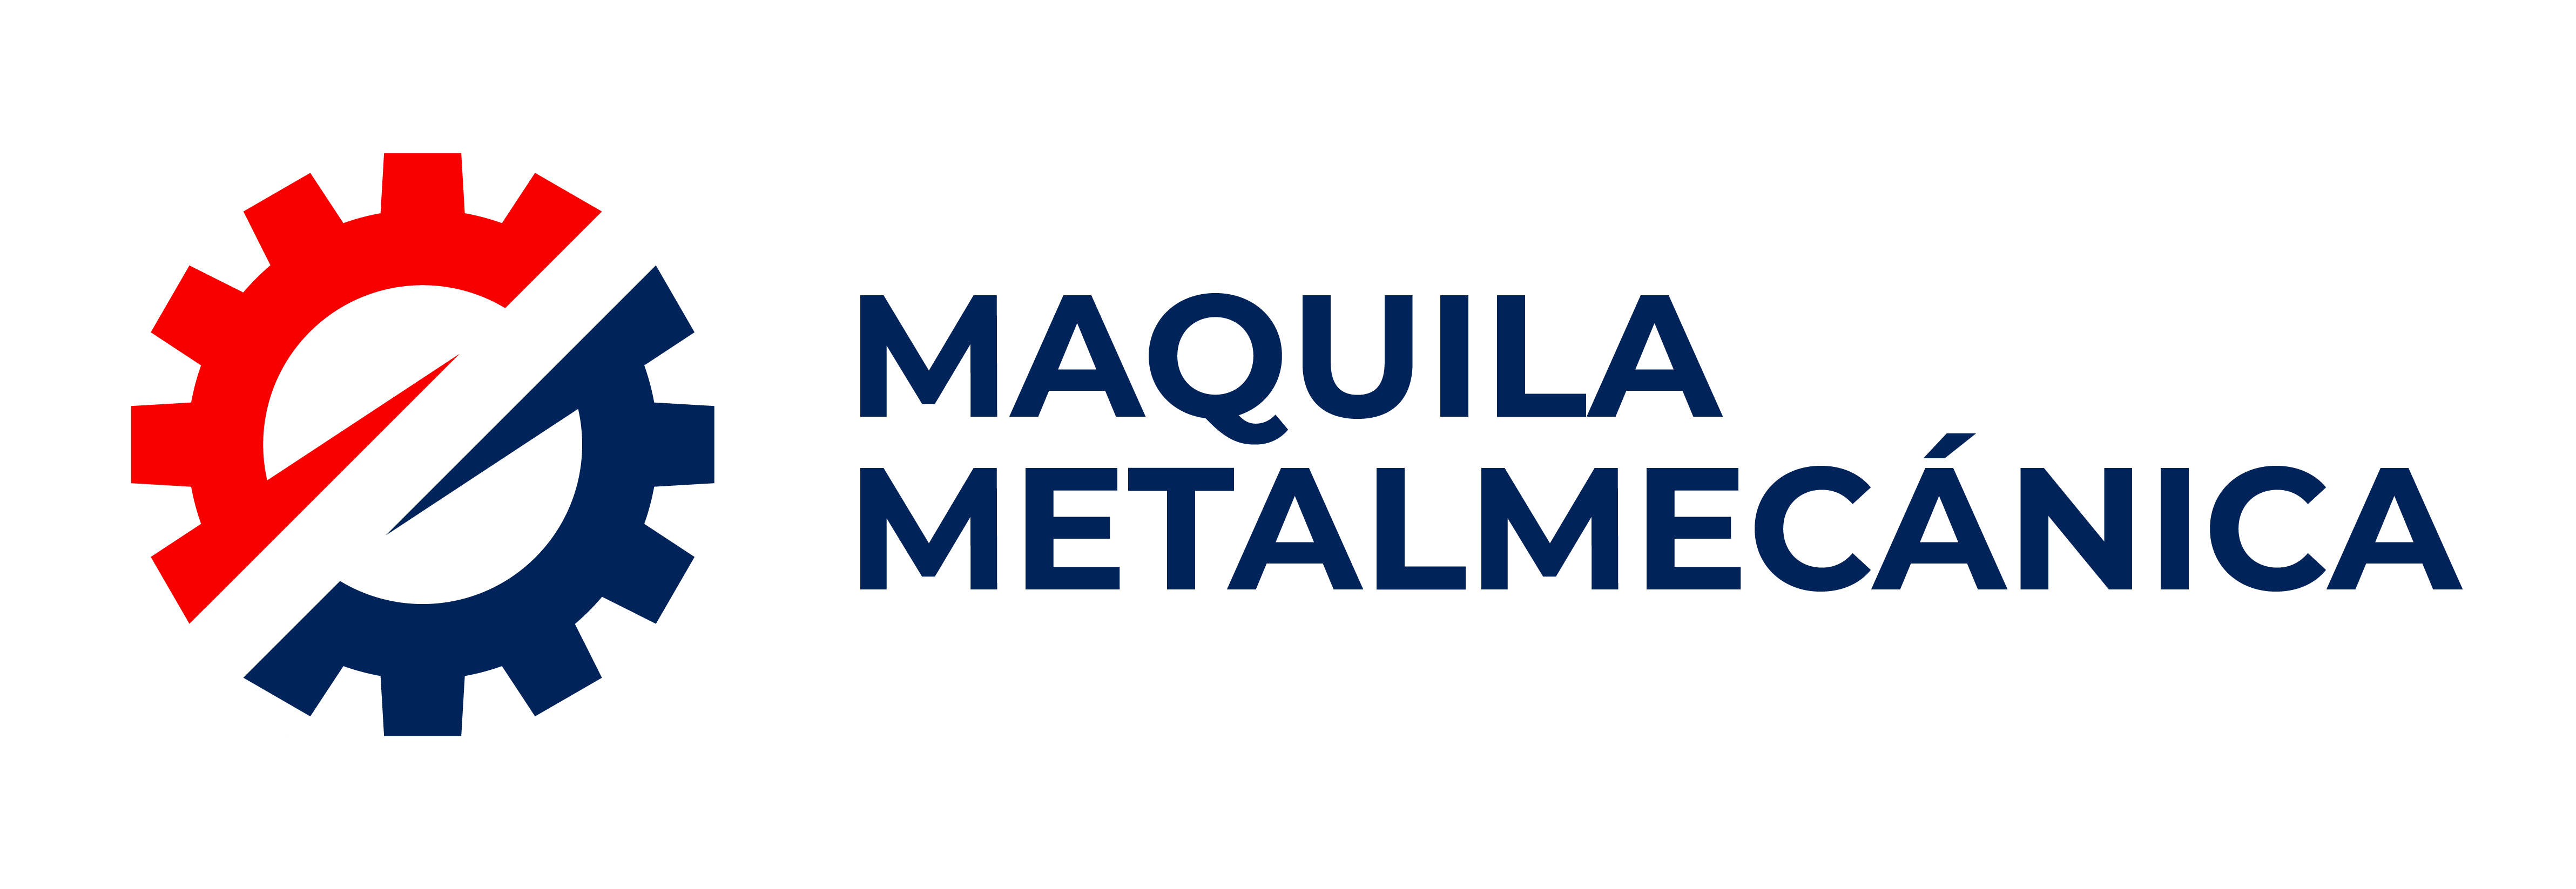 Maquila Metalmecánica